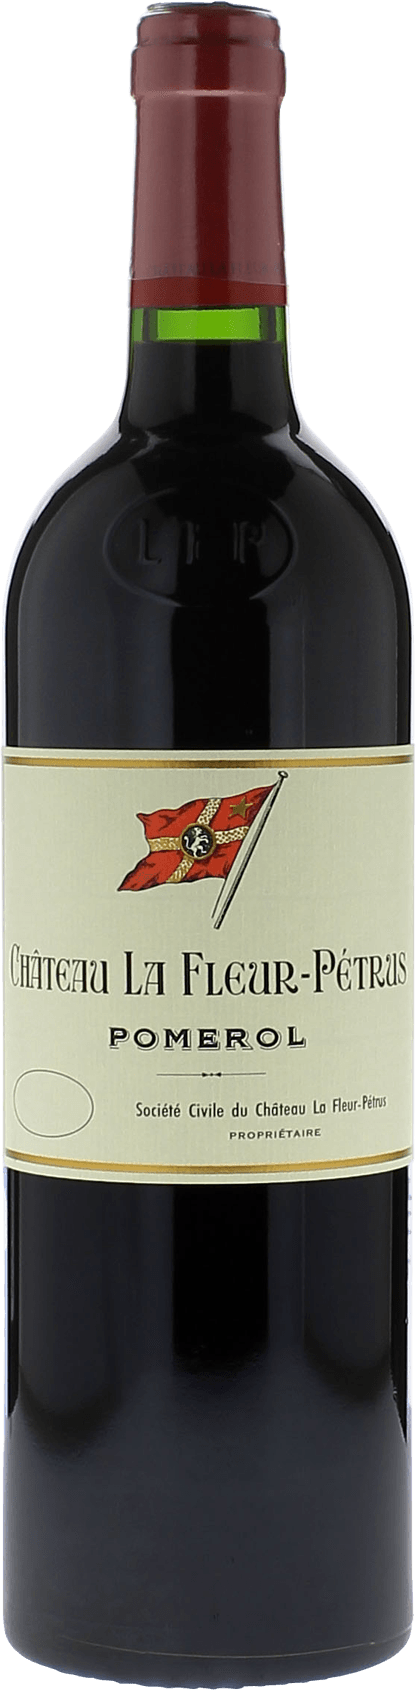 La fleur petrus 1998  Pomerol, Bordeaux rouge